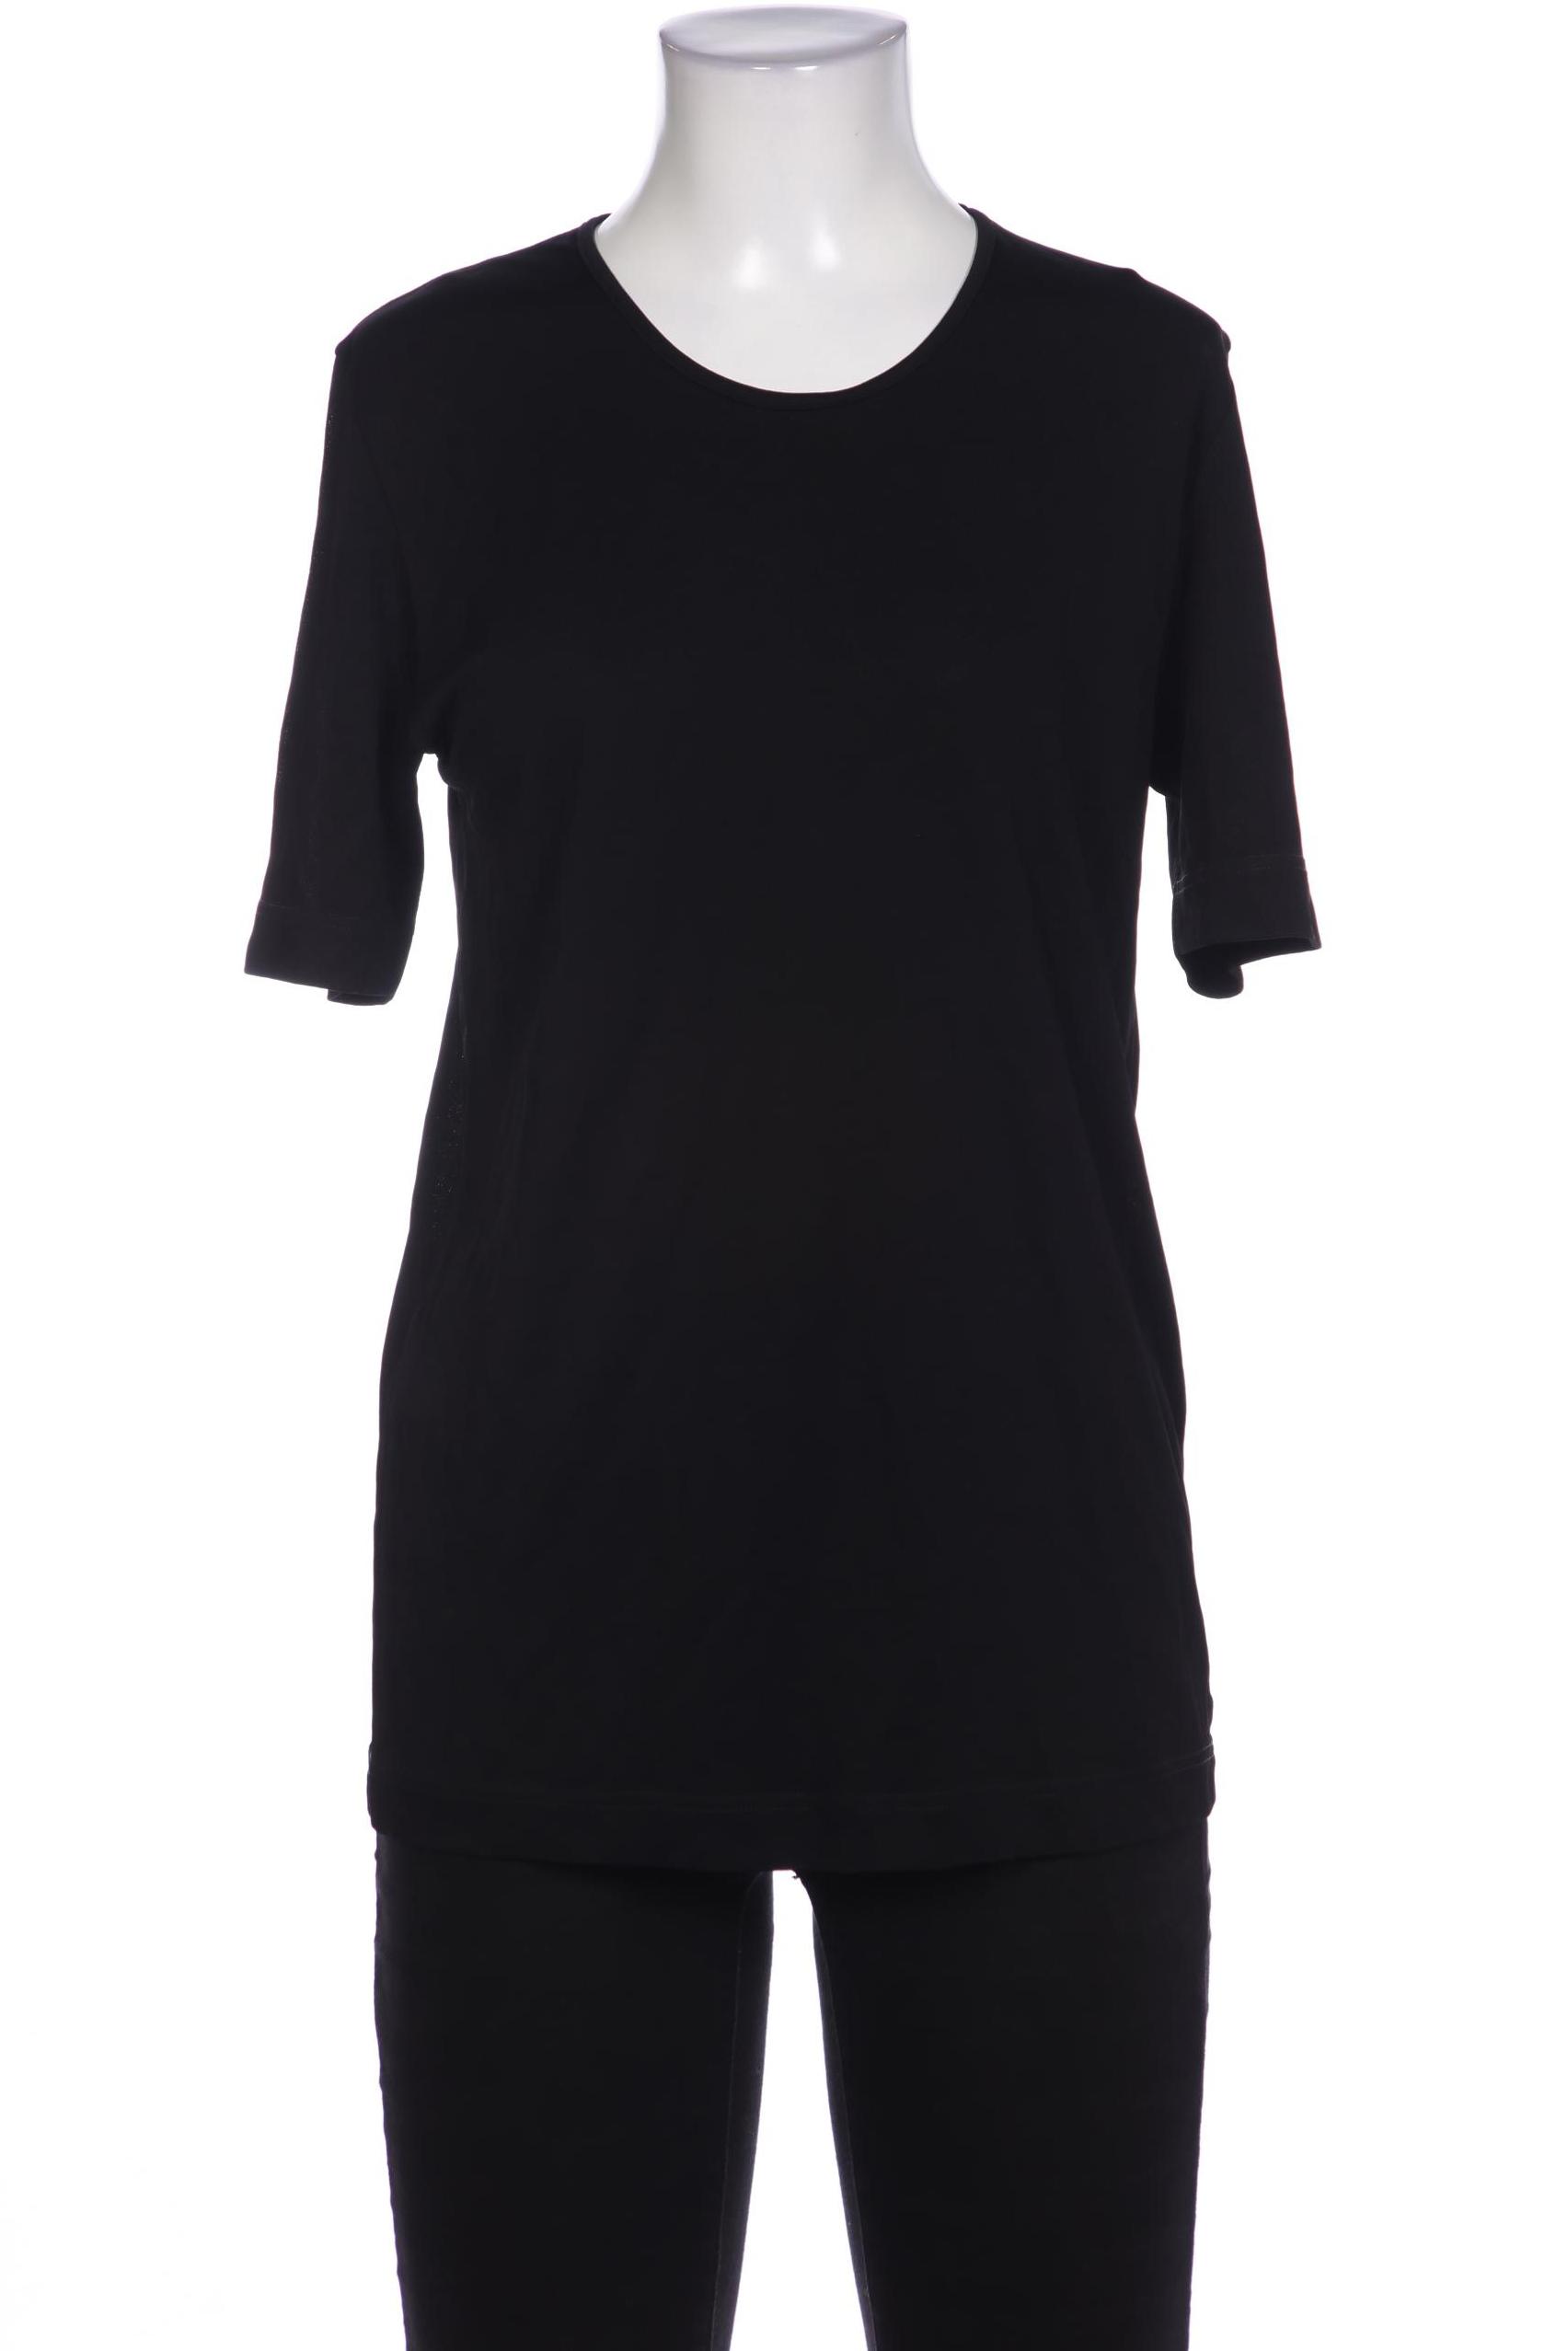 Gran Sasso Damen T-Shirt, schwarz, Gr. 38 von Gran Sasso